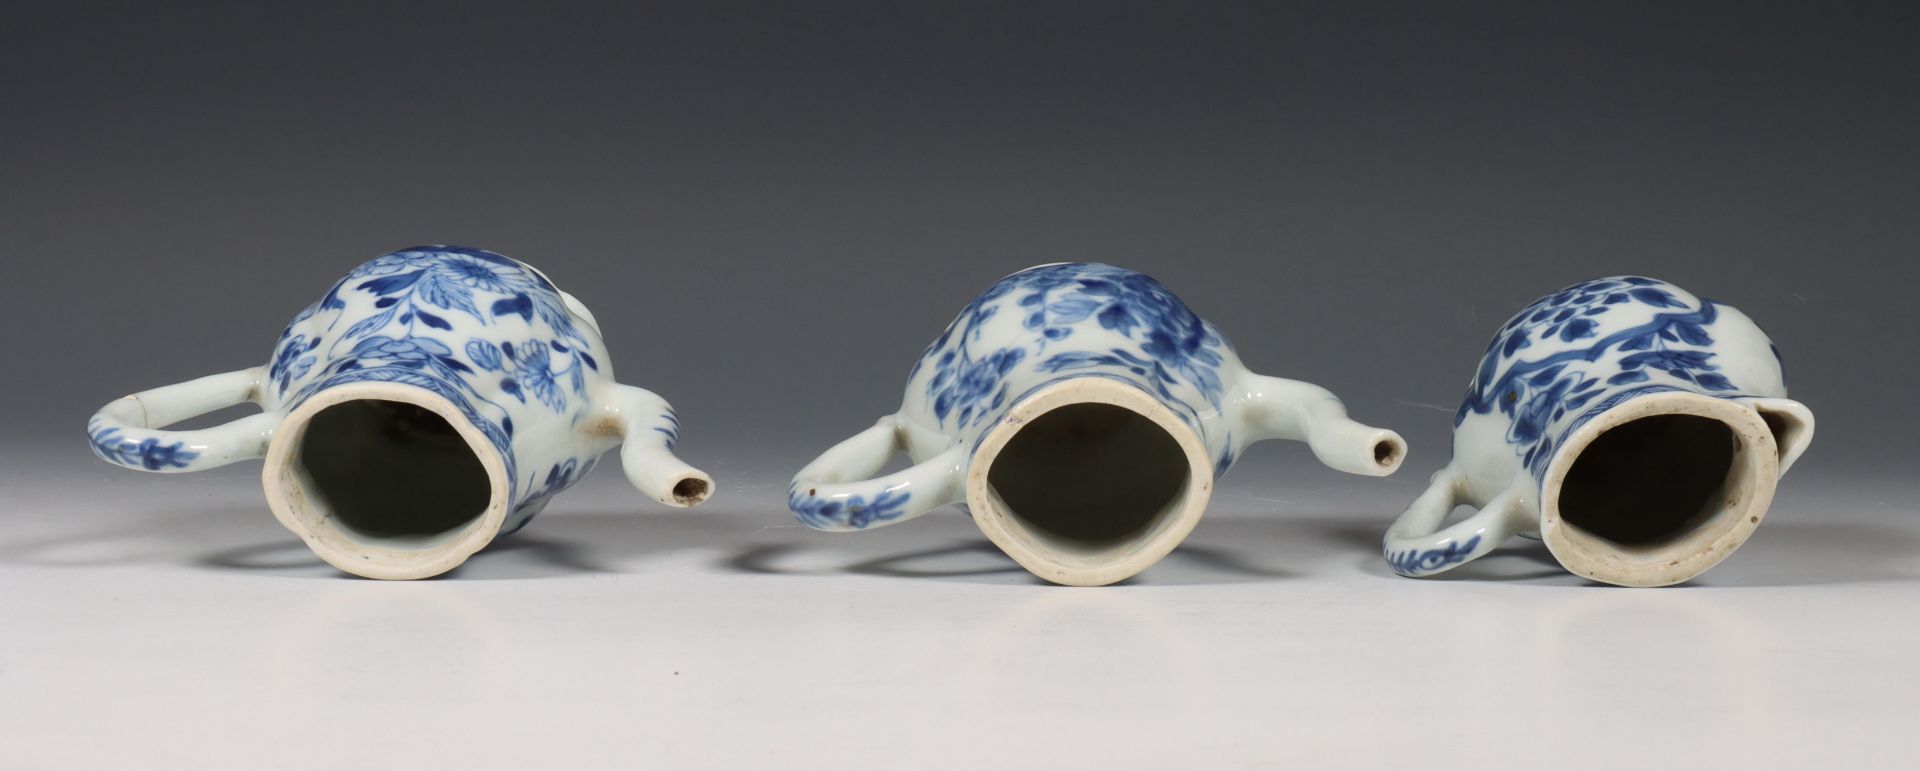 China, samengesteld blauw-wit porseleinen olie- en azijnstel, 18e eeuw, - Bild 2 aus 6